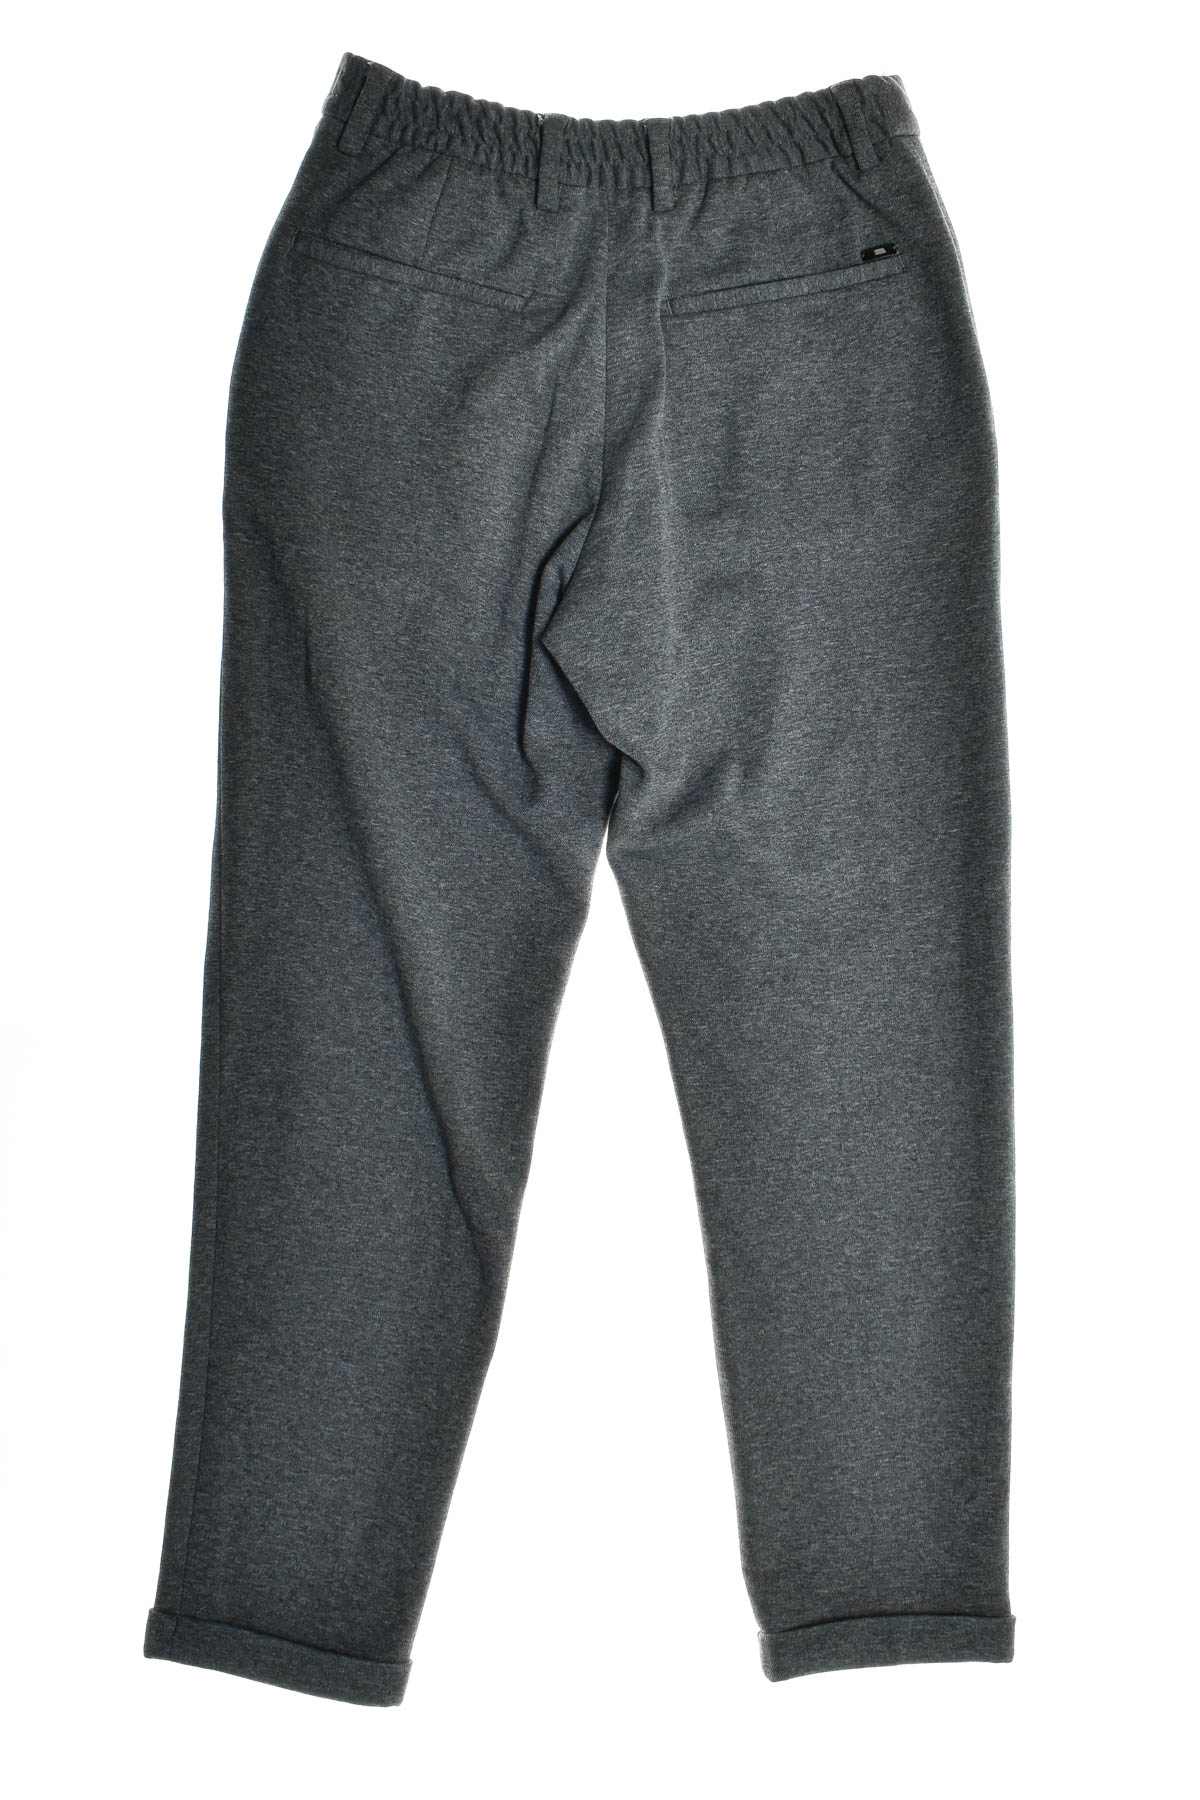 Men's trousers - ZARA - 1